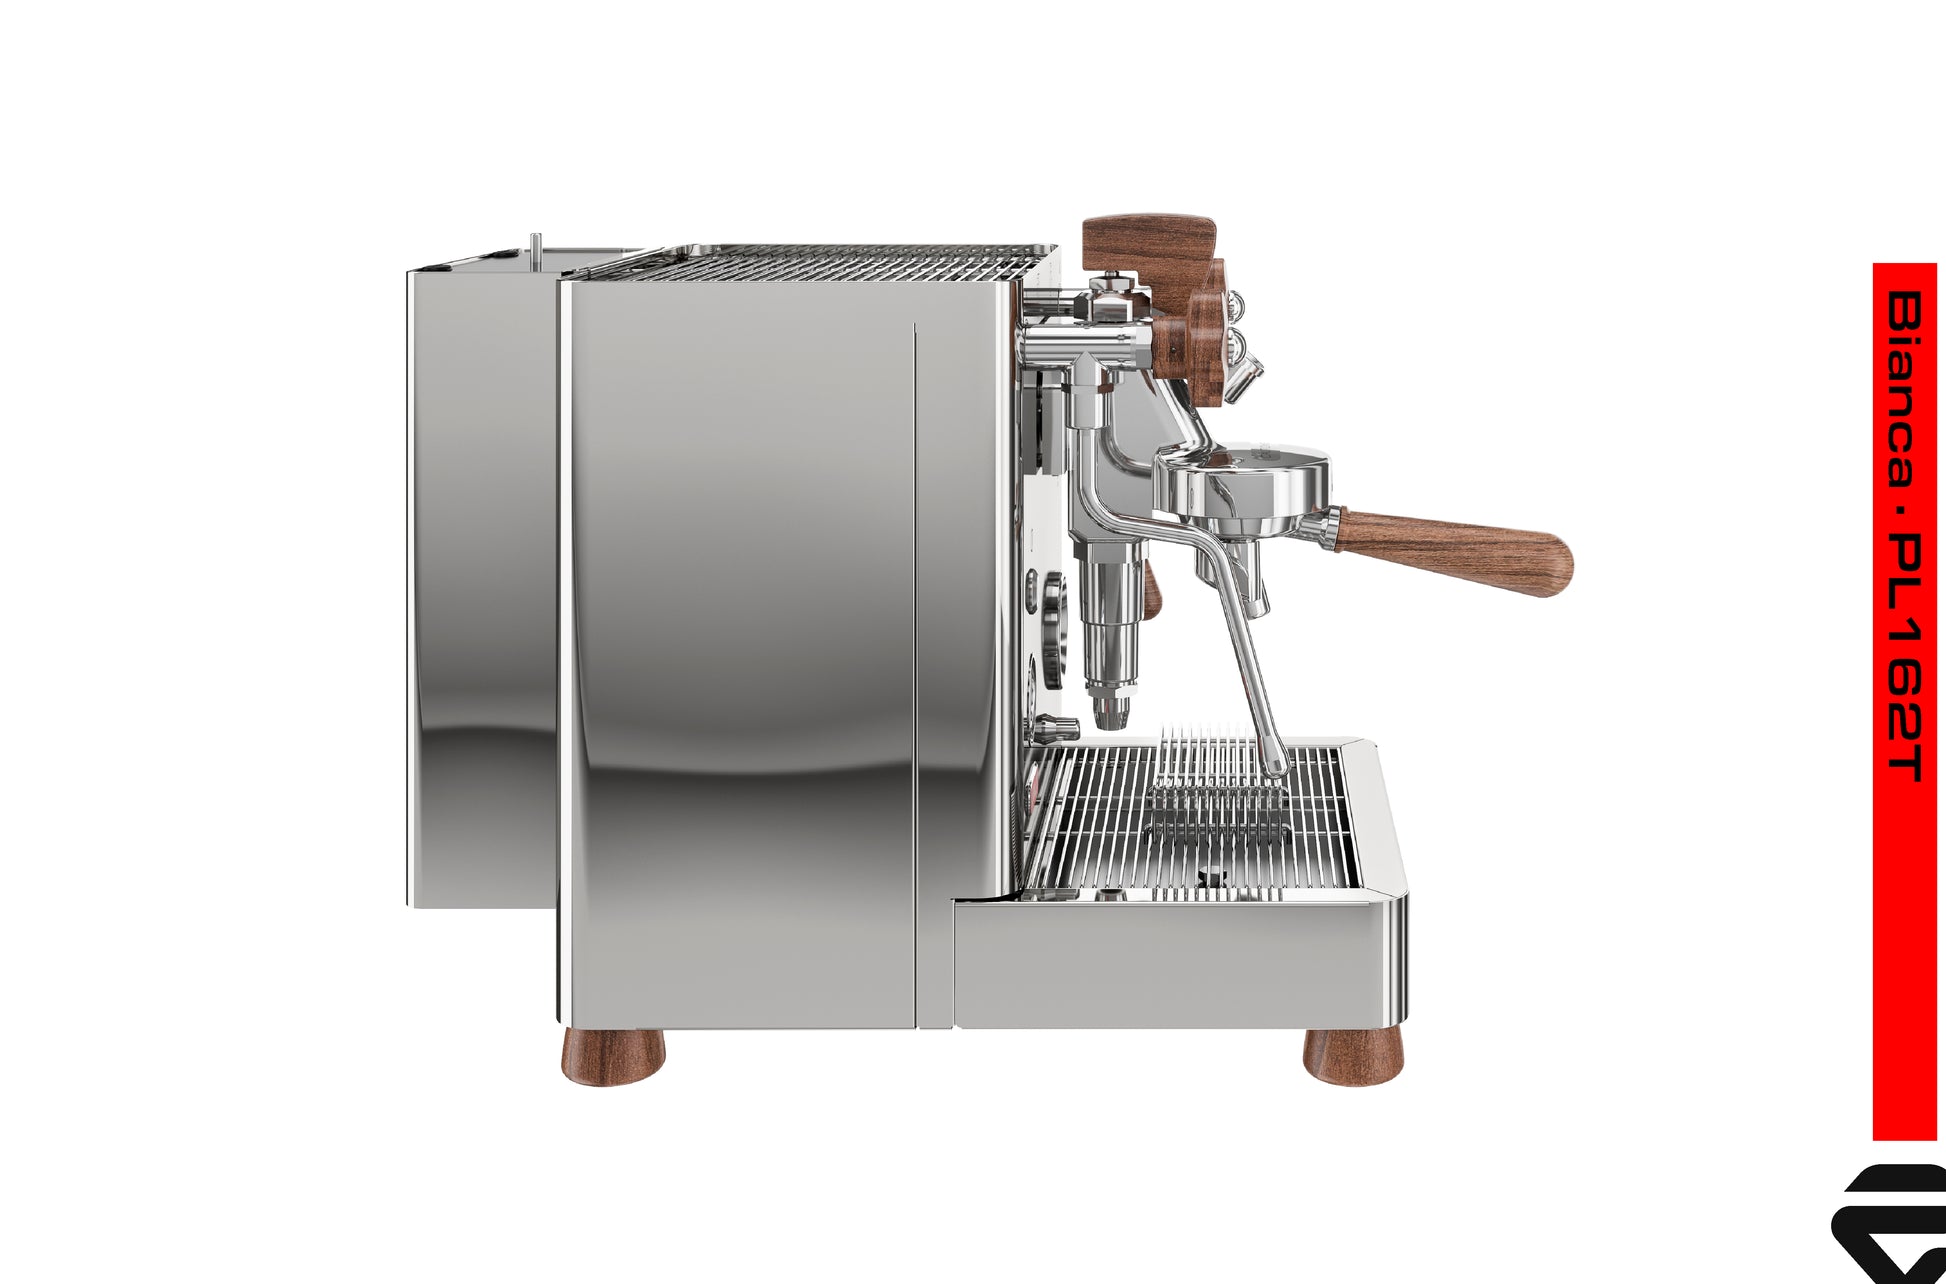 Lelit BIANCA PL162T - La máquina de café espresso de lujo